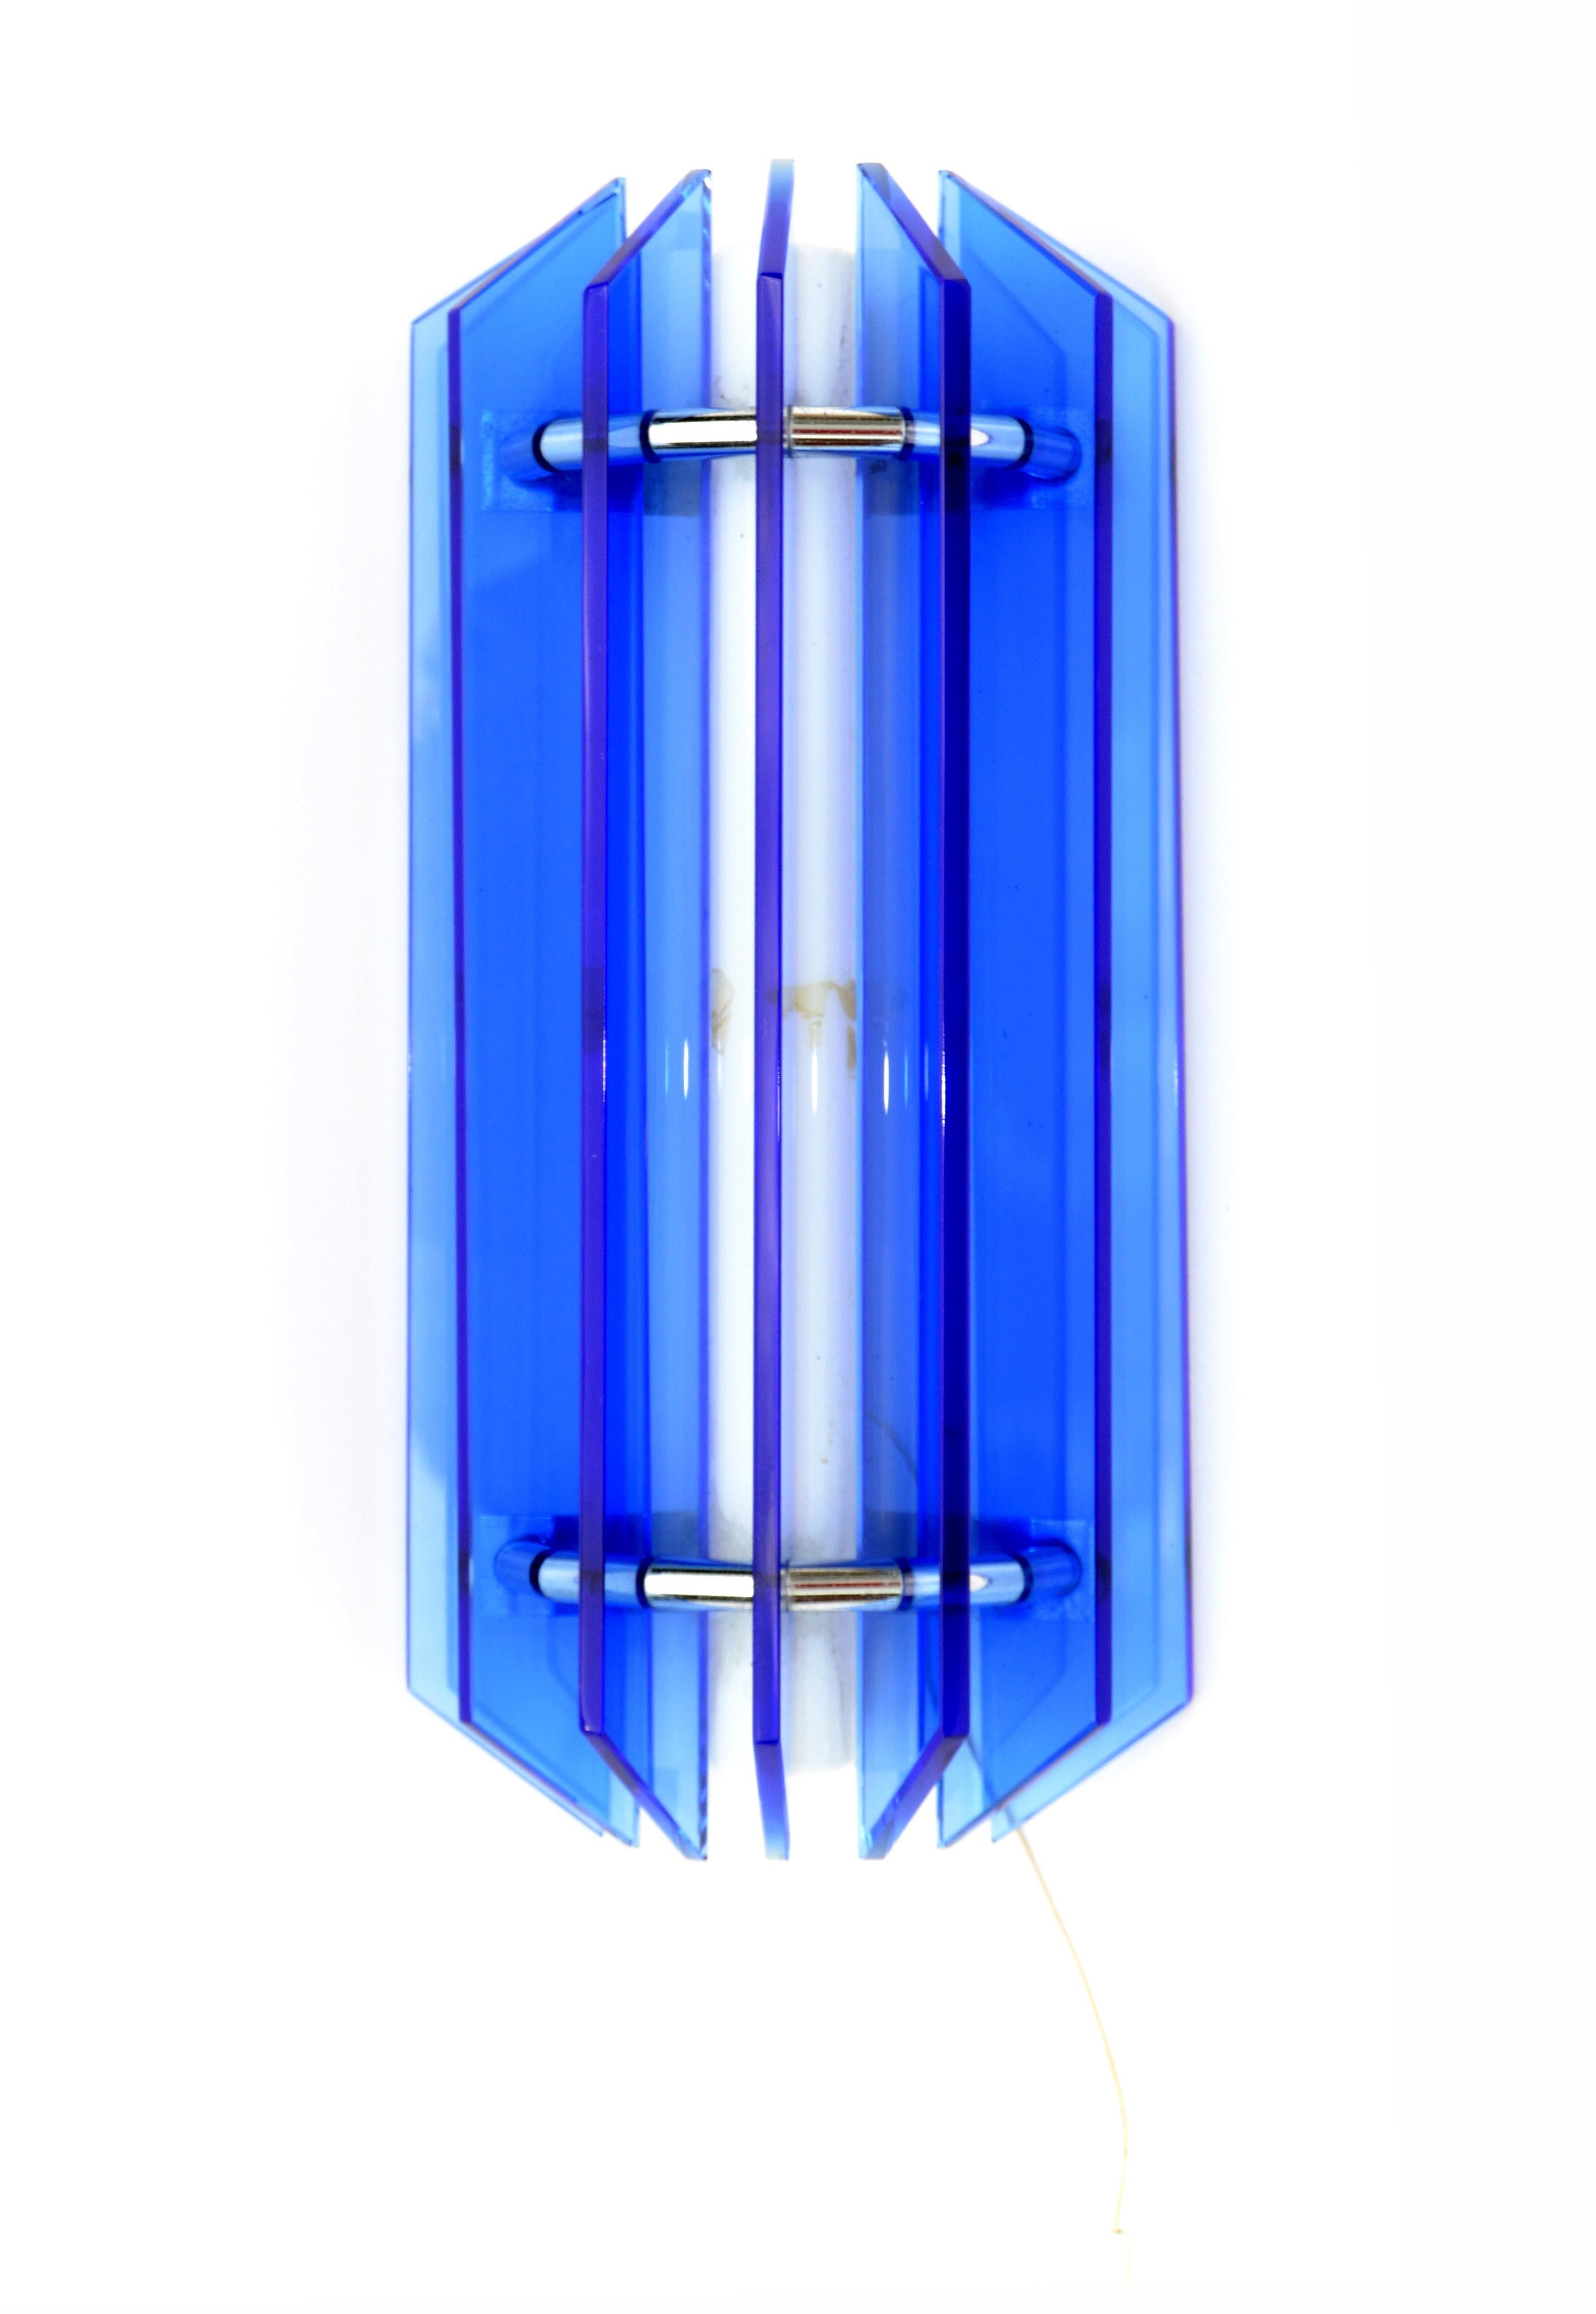 Wunderschöne große Leuchte mit blauen Glaslamellen von VECA mit verchromten Details, hergestellt in Italien in den späten 1960er Jahren.
In einwandfreiem Zustand und verwendet eine röhrenförmige Neonleuchte max. 60 Watt.
Wird mit einem Schnurzug